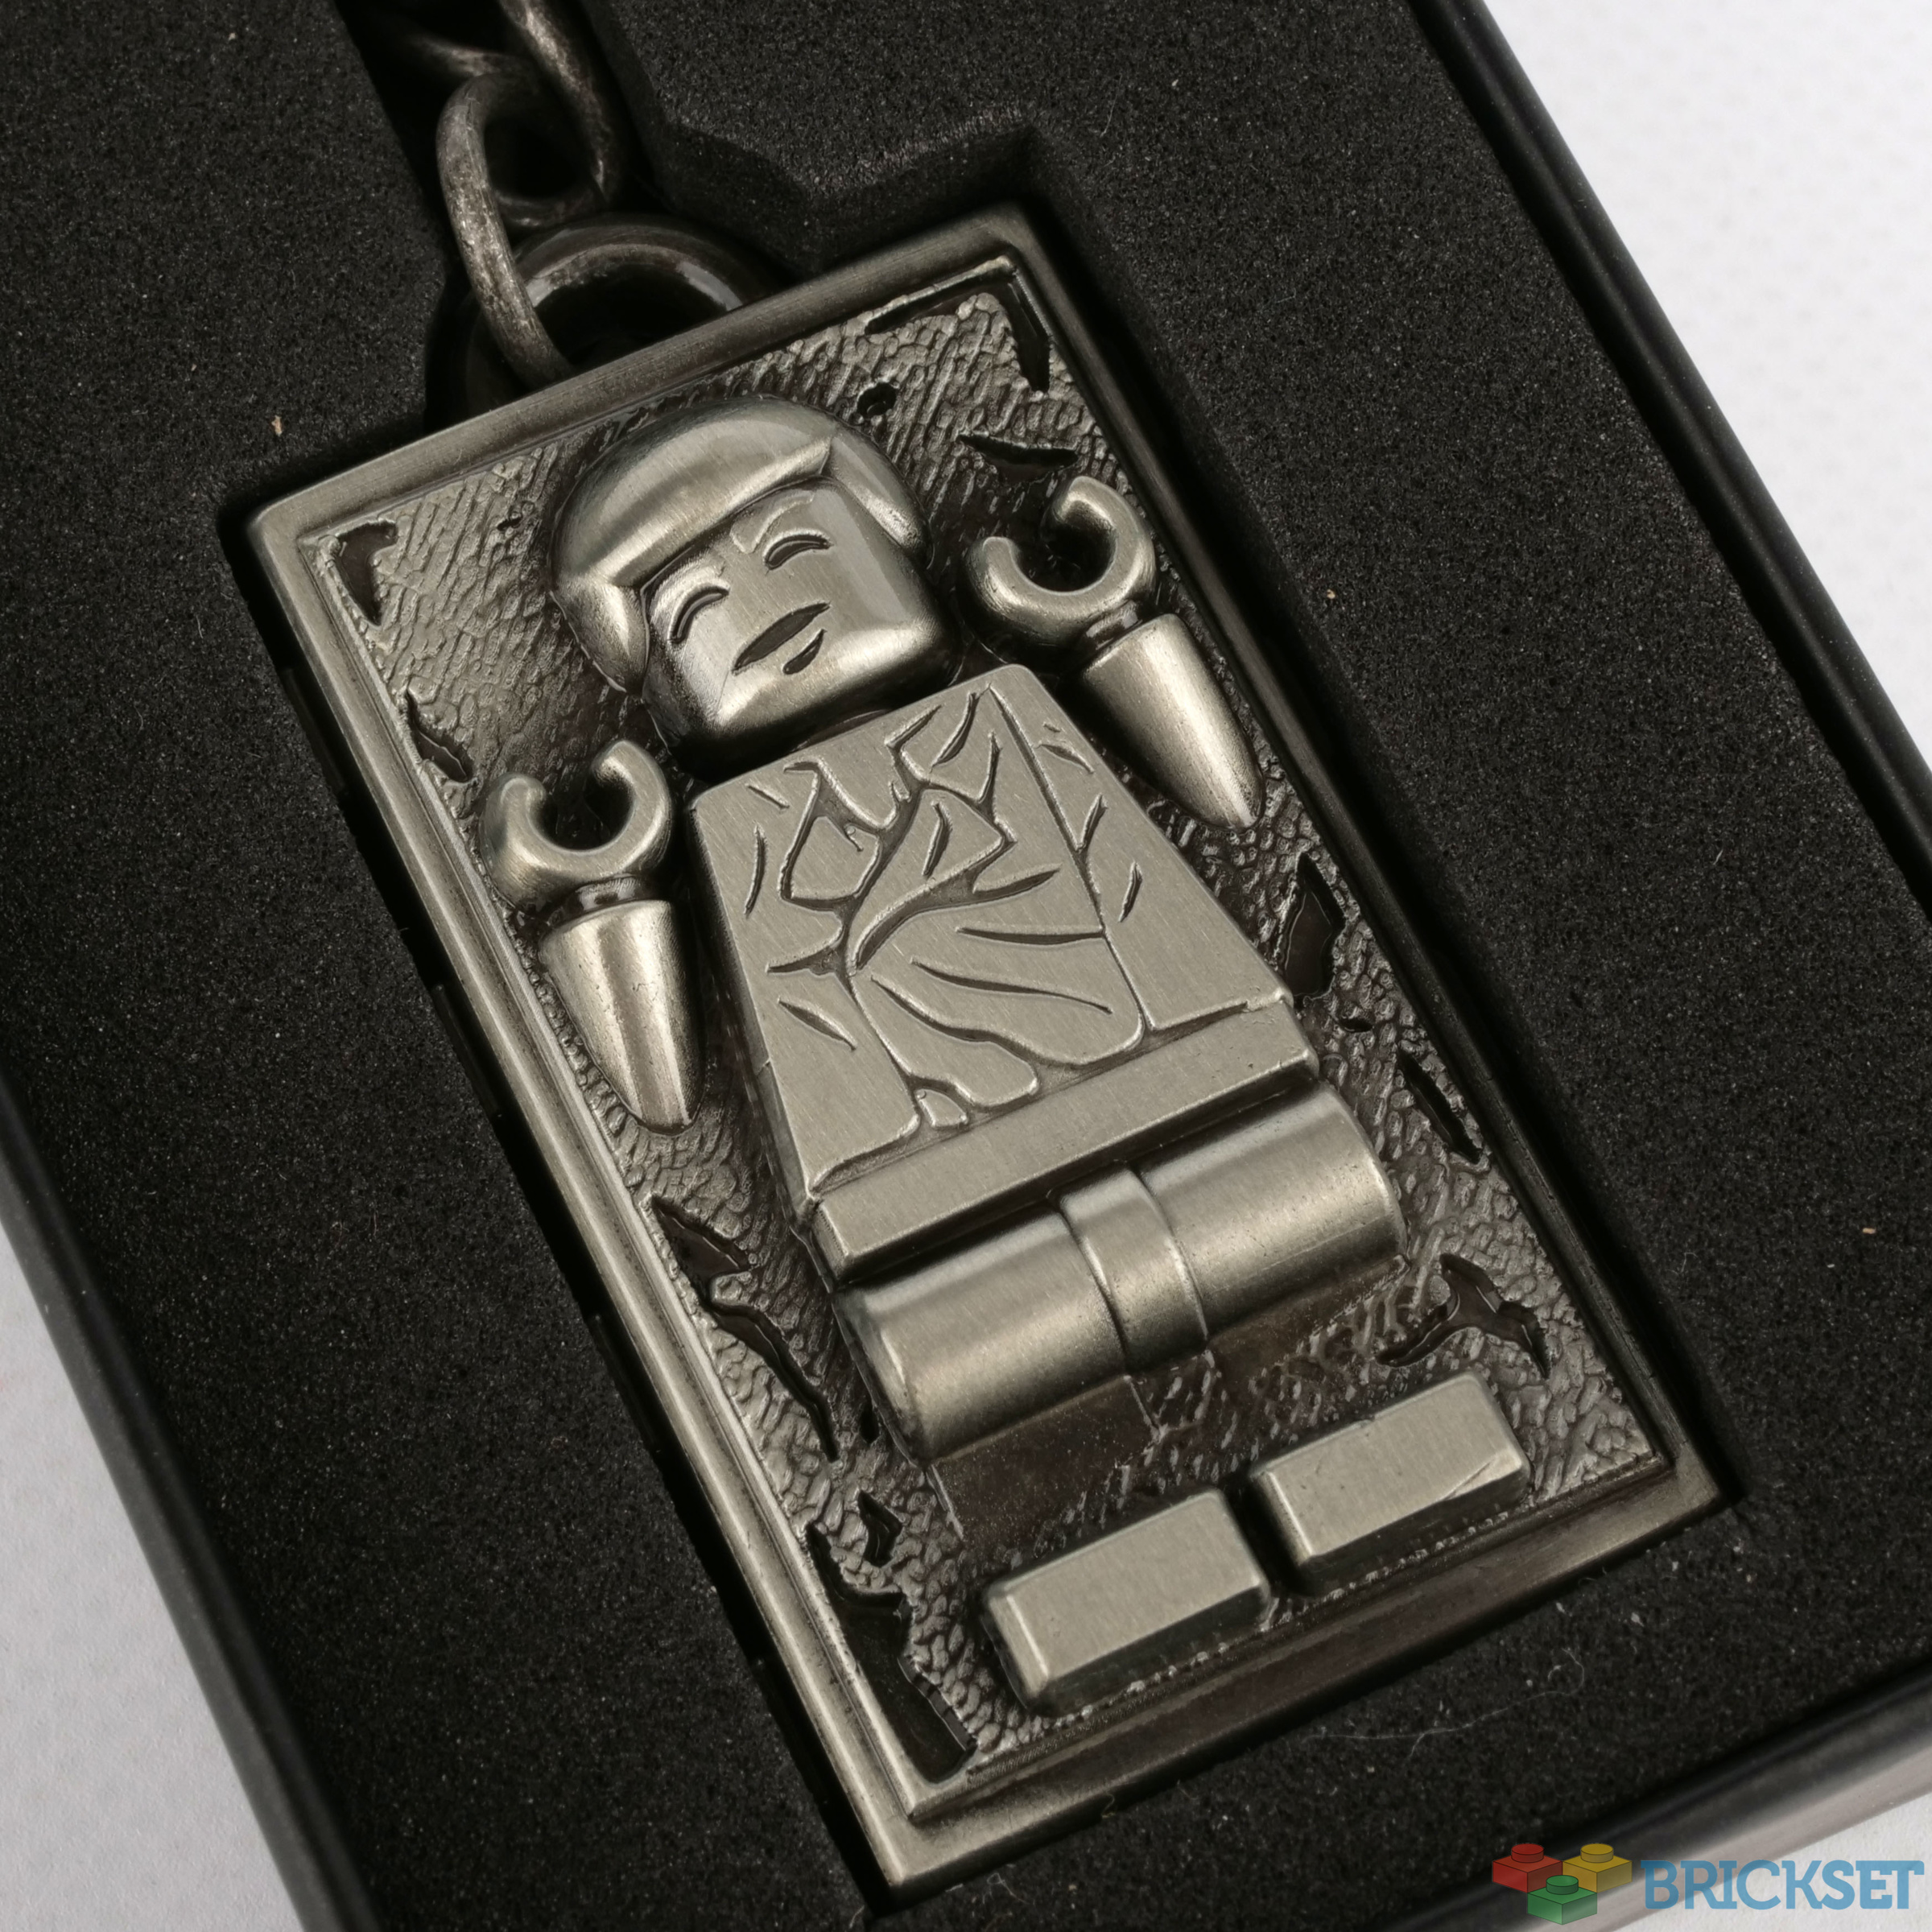 Metall Schlüsselanhänger Star Wars keychain 6cm Han Solo in Carbonite 